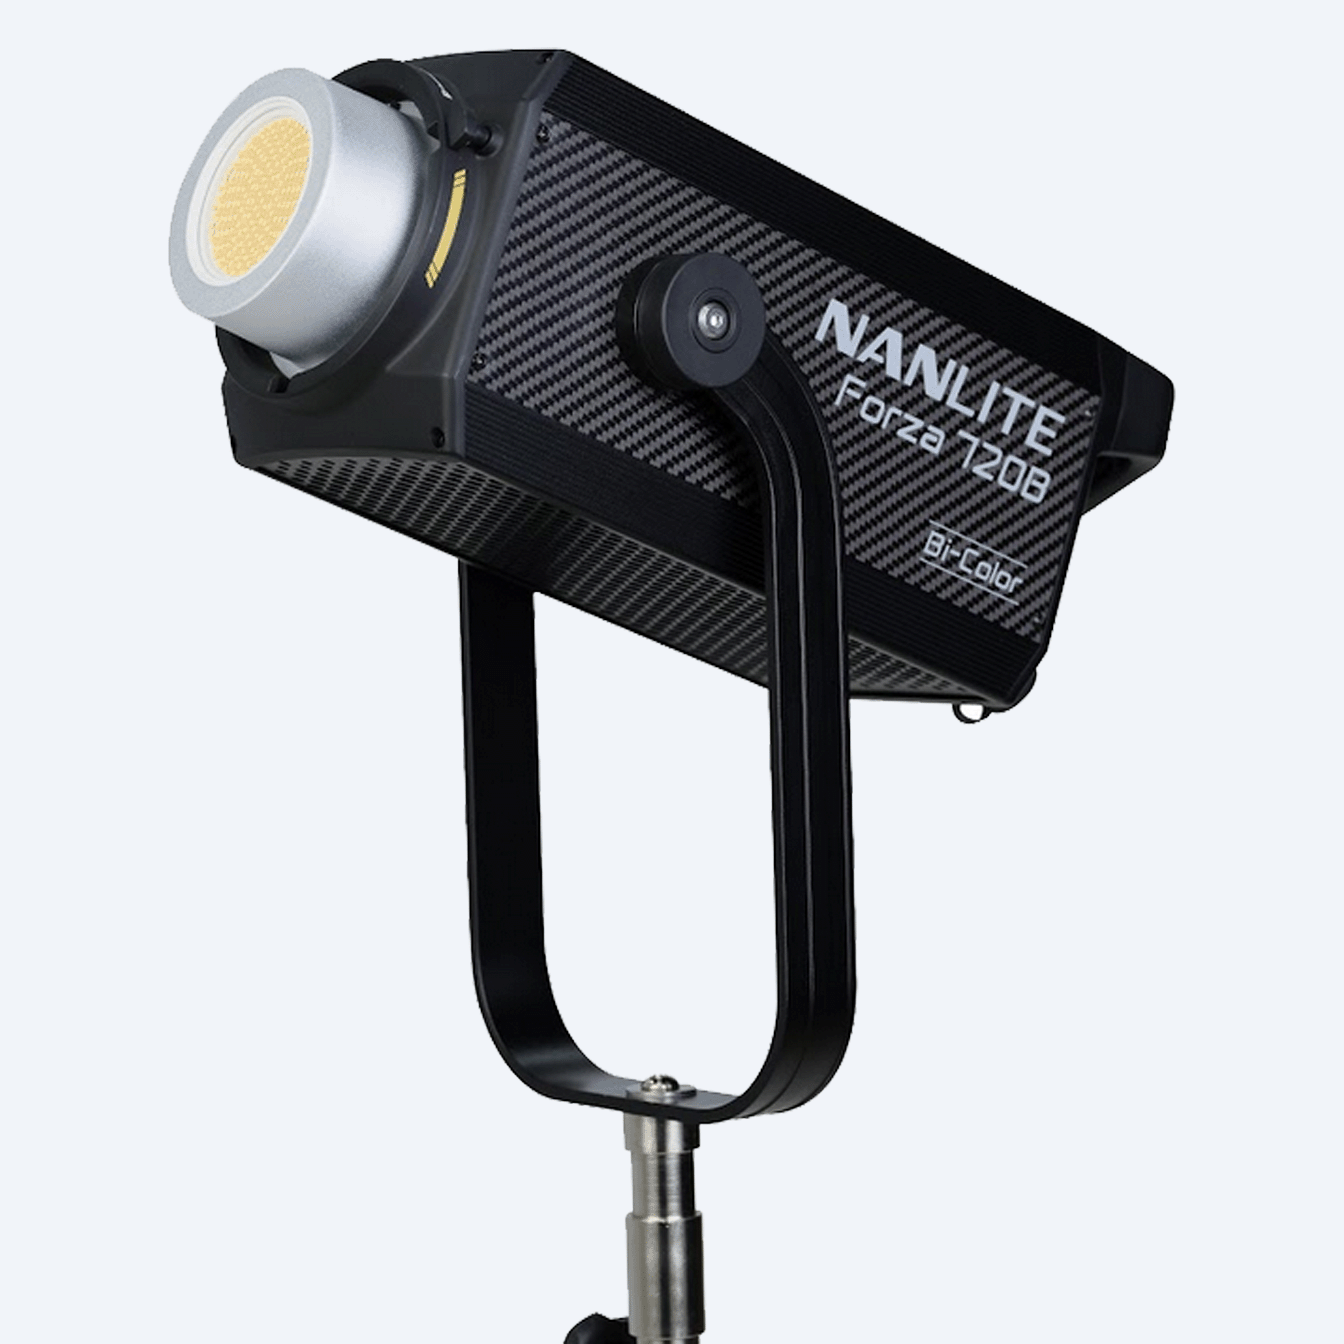 Nanlite Forza 720B Bicolor